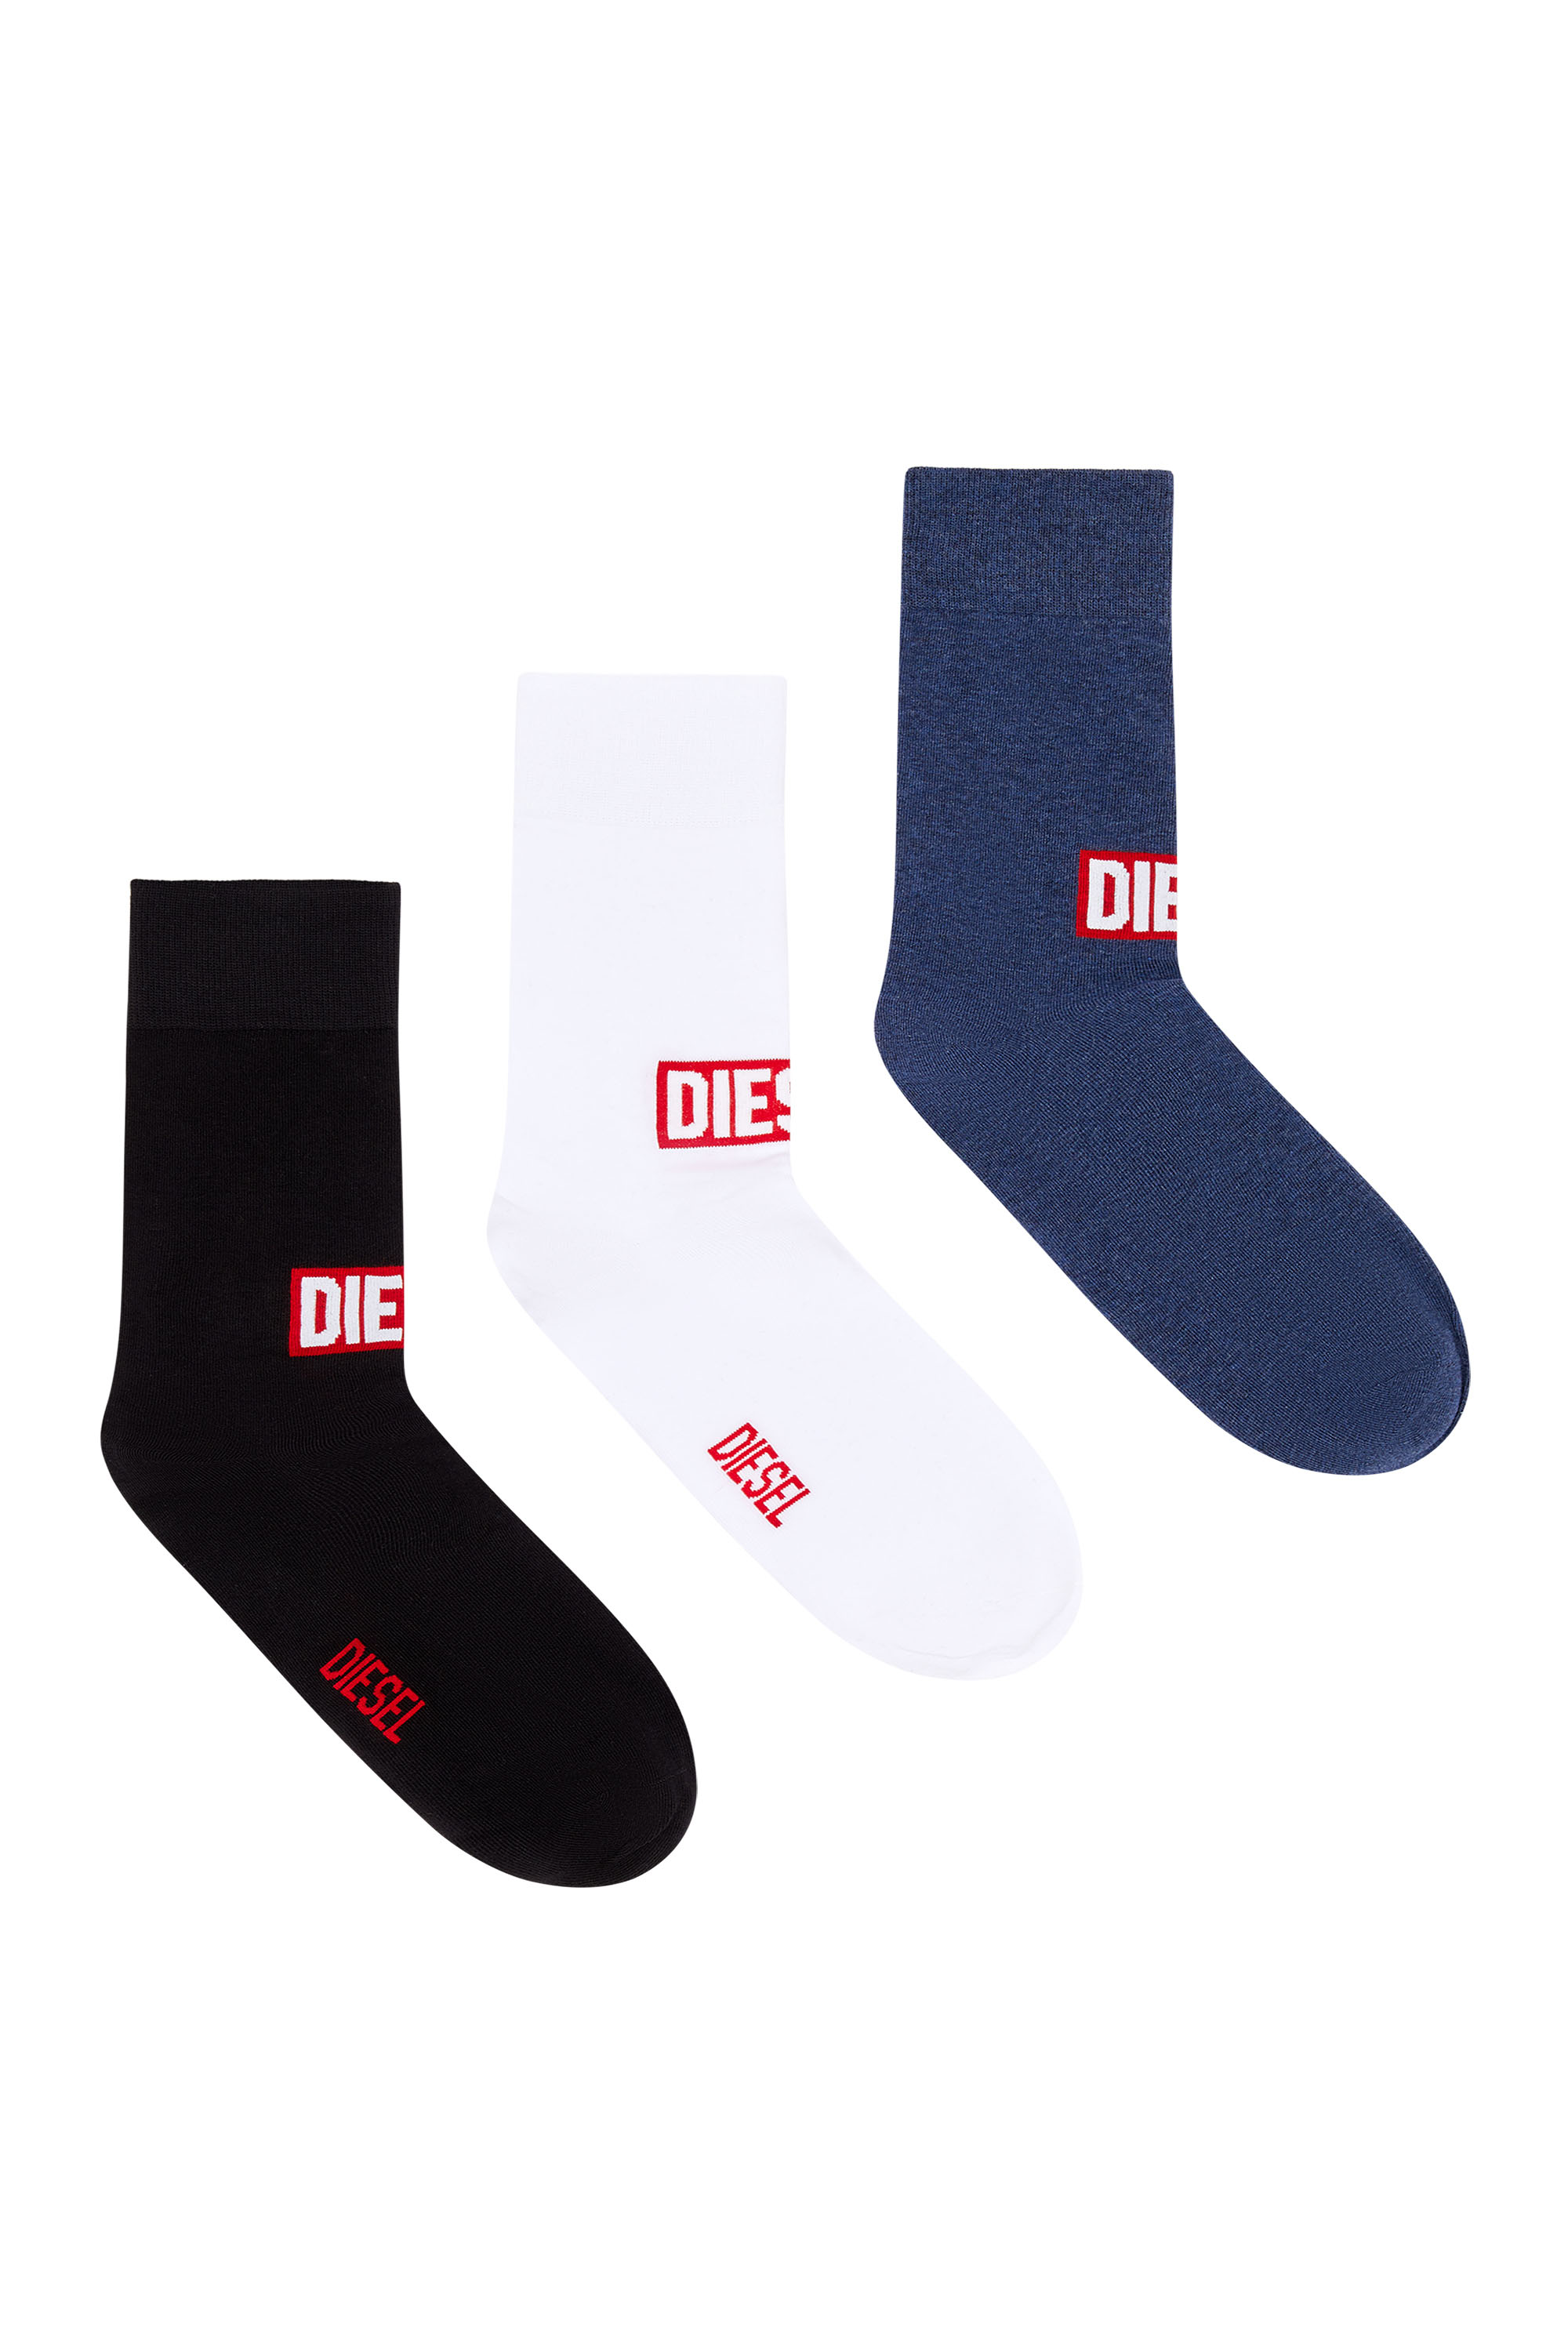 Diesel - Three-pack of socks with red Diesel logo - Socks - Man - Multicolor